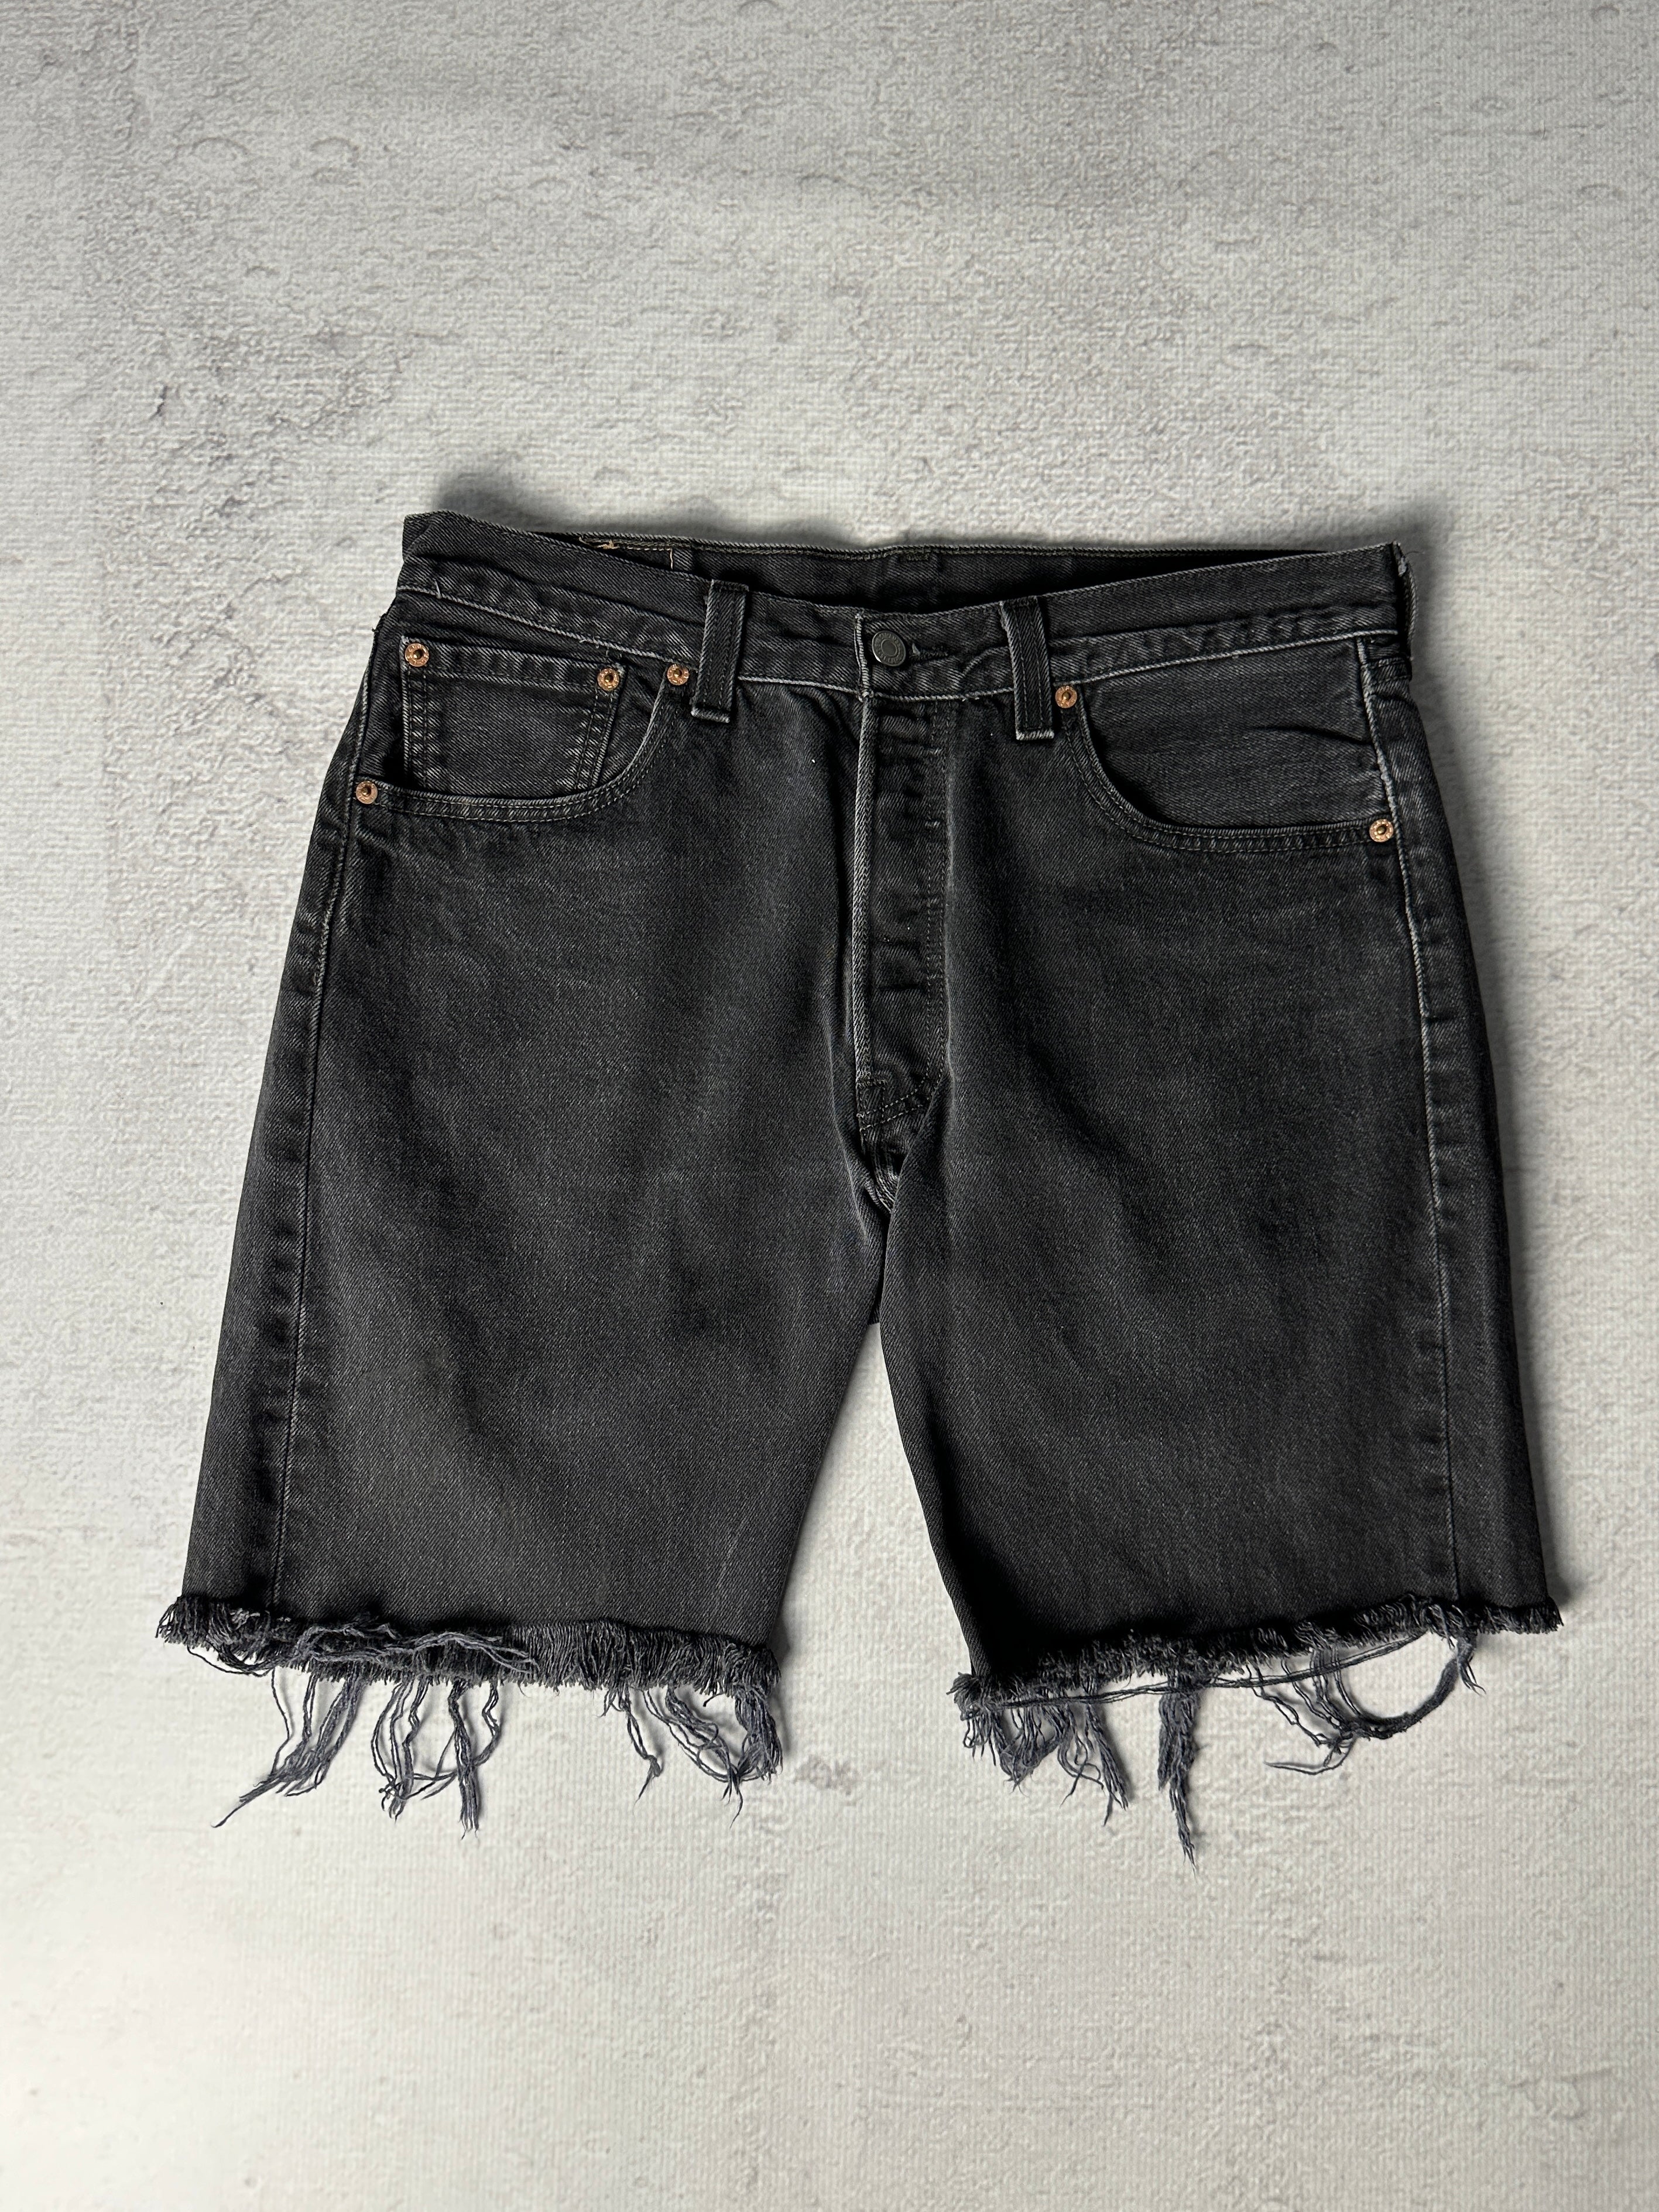 Vintage Levis 501 Jean Shorts - Men's 34W9L